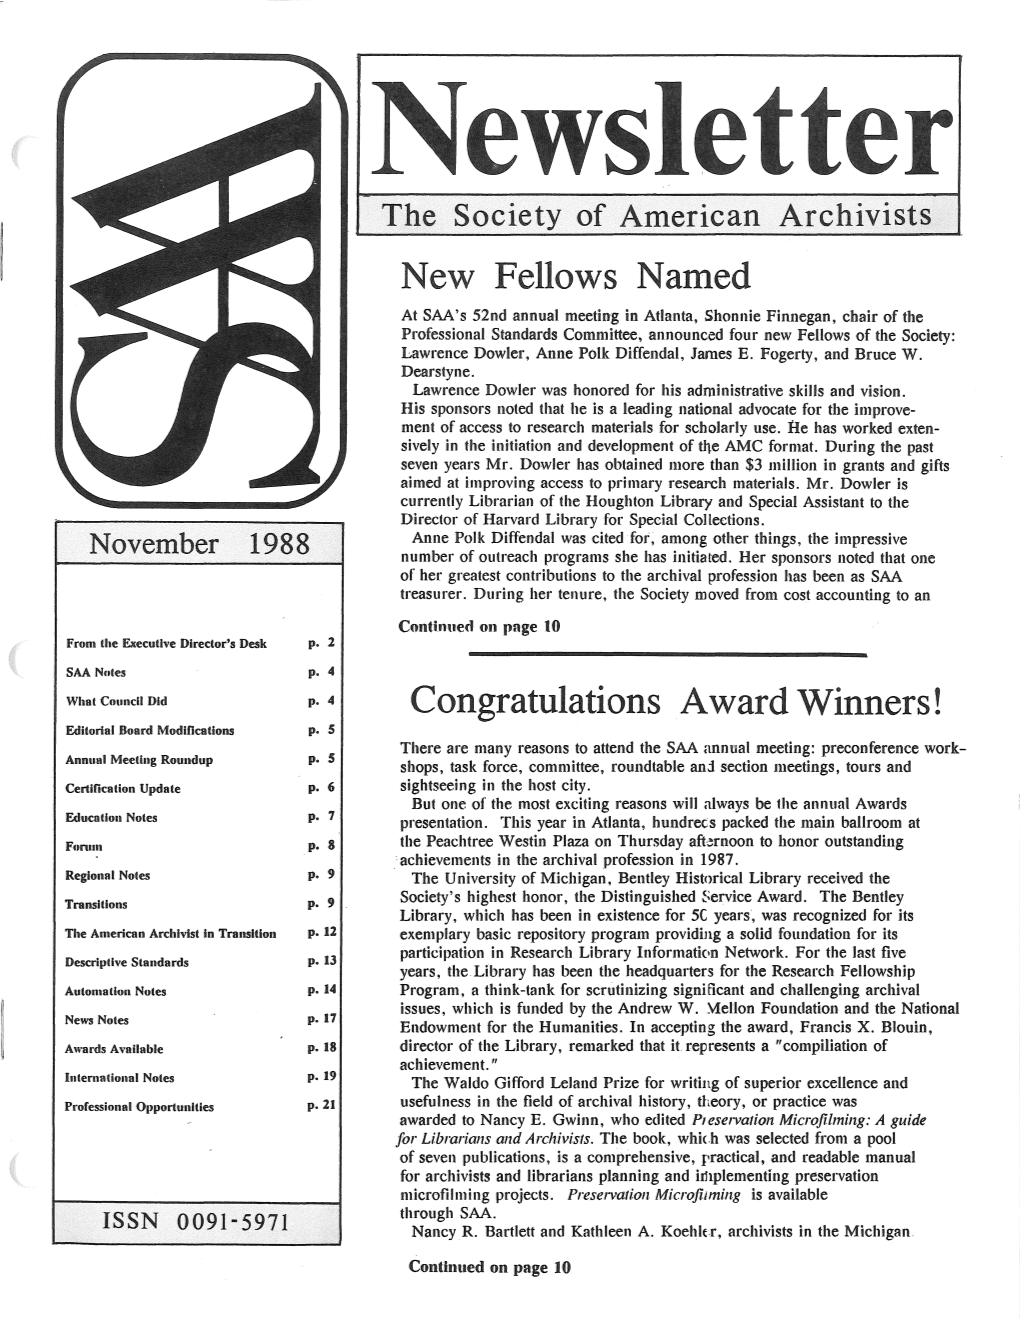 SAA Newsletter 1988